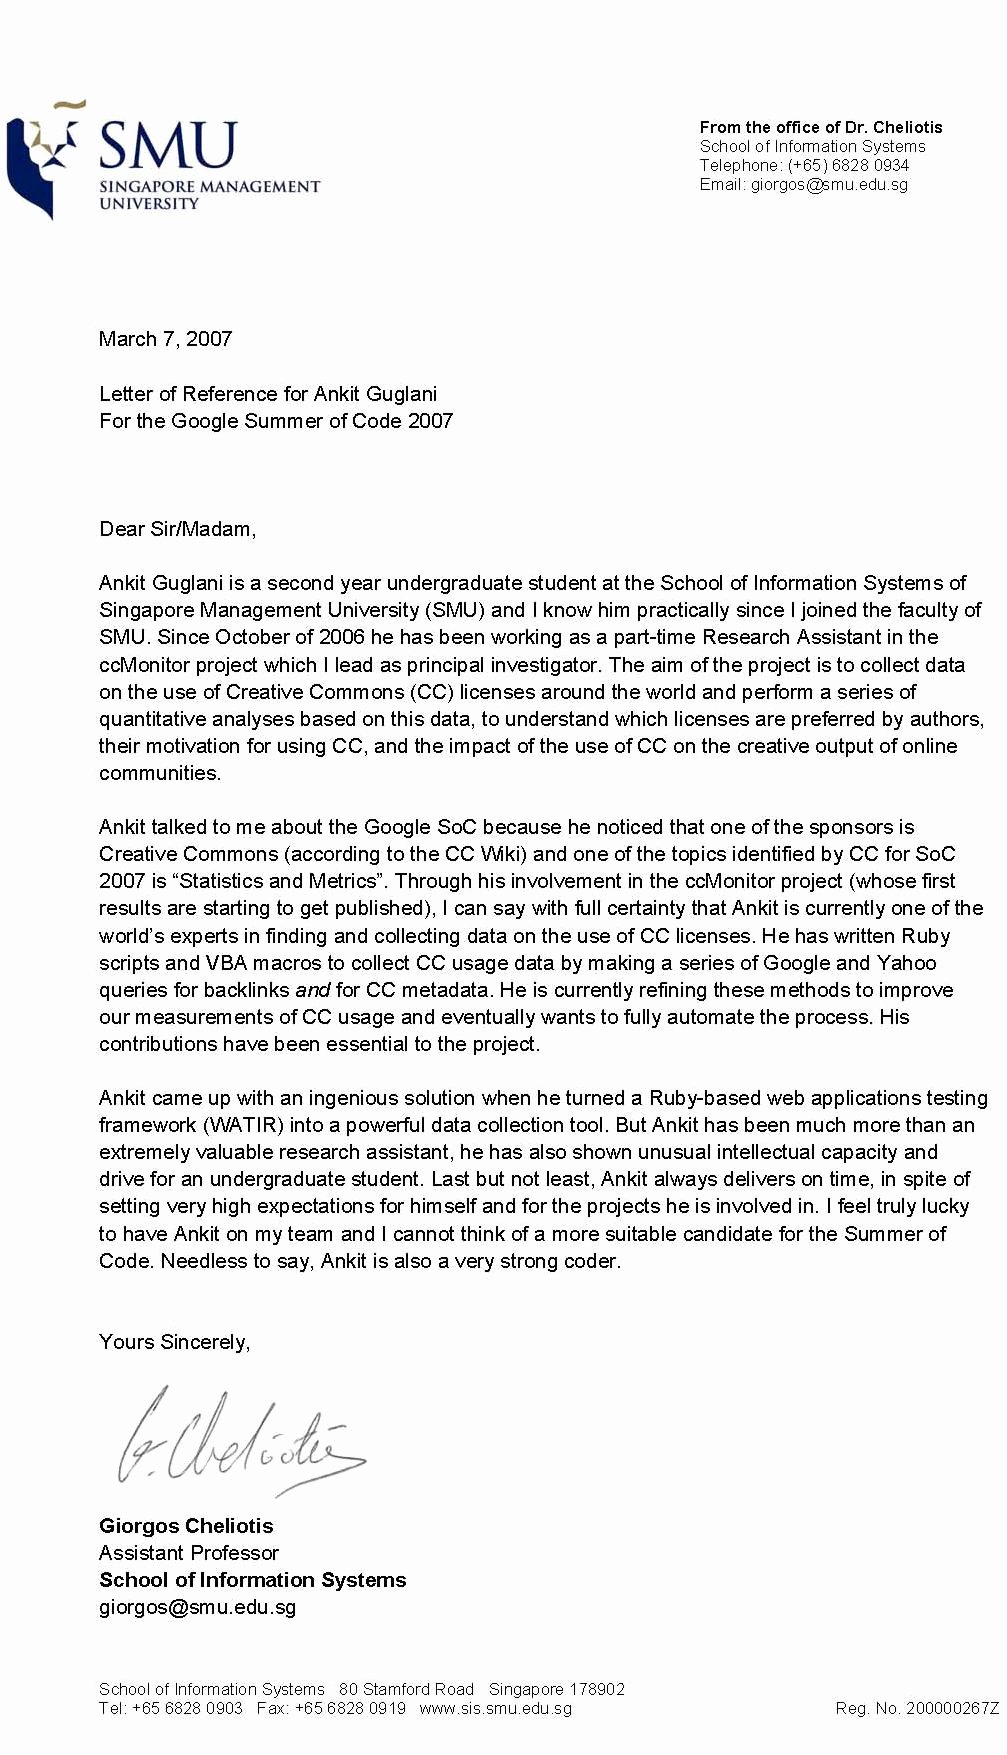 Recommendation Letter for Professor Position Unique Re Mendations